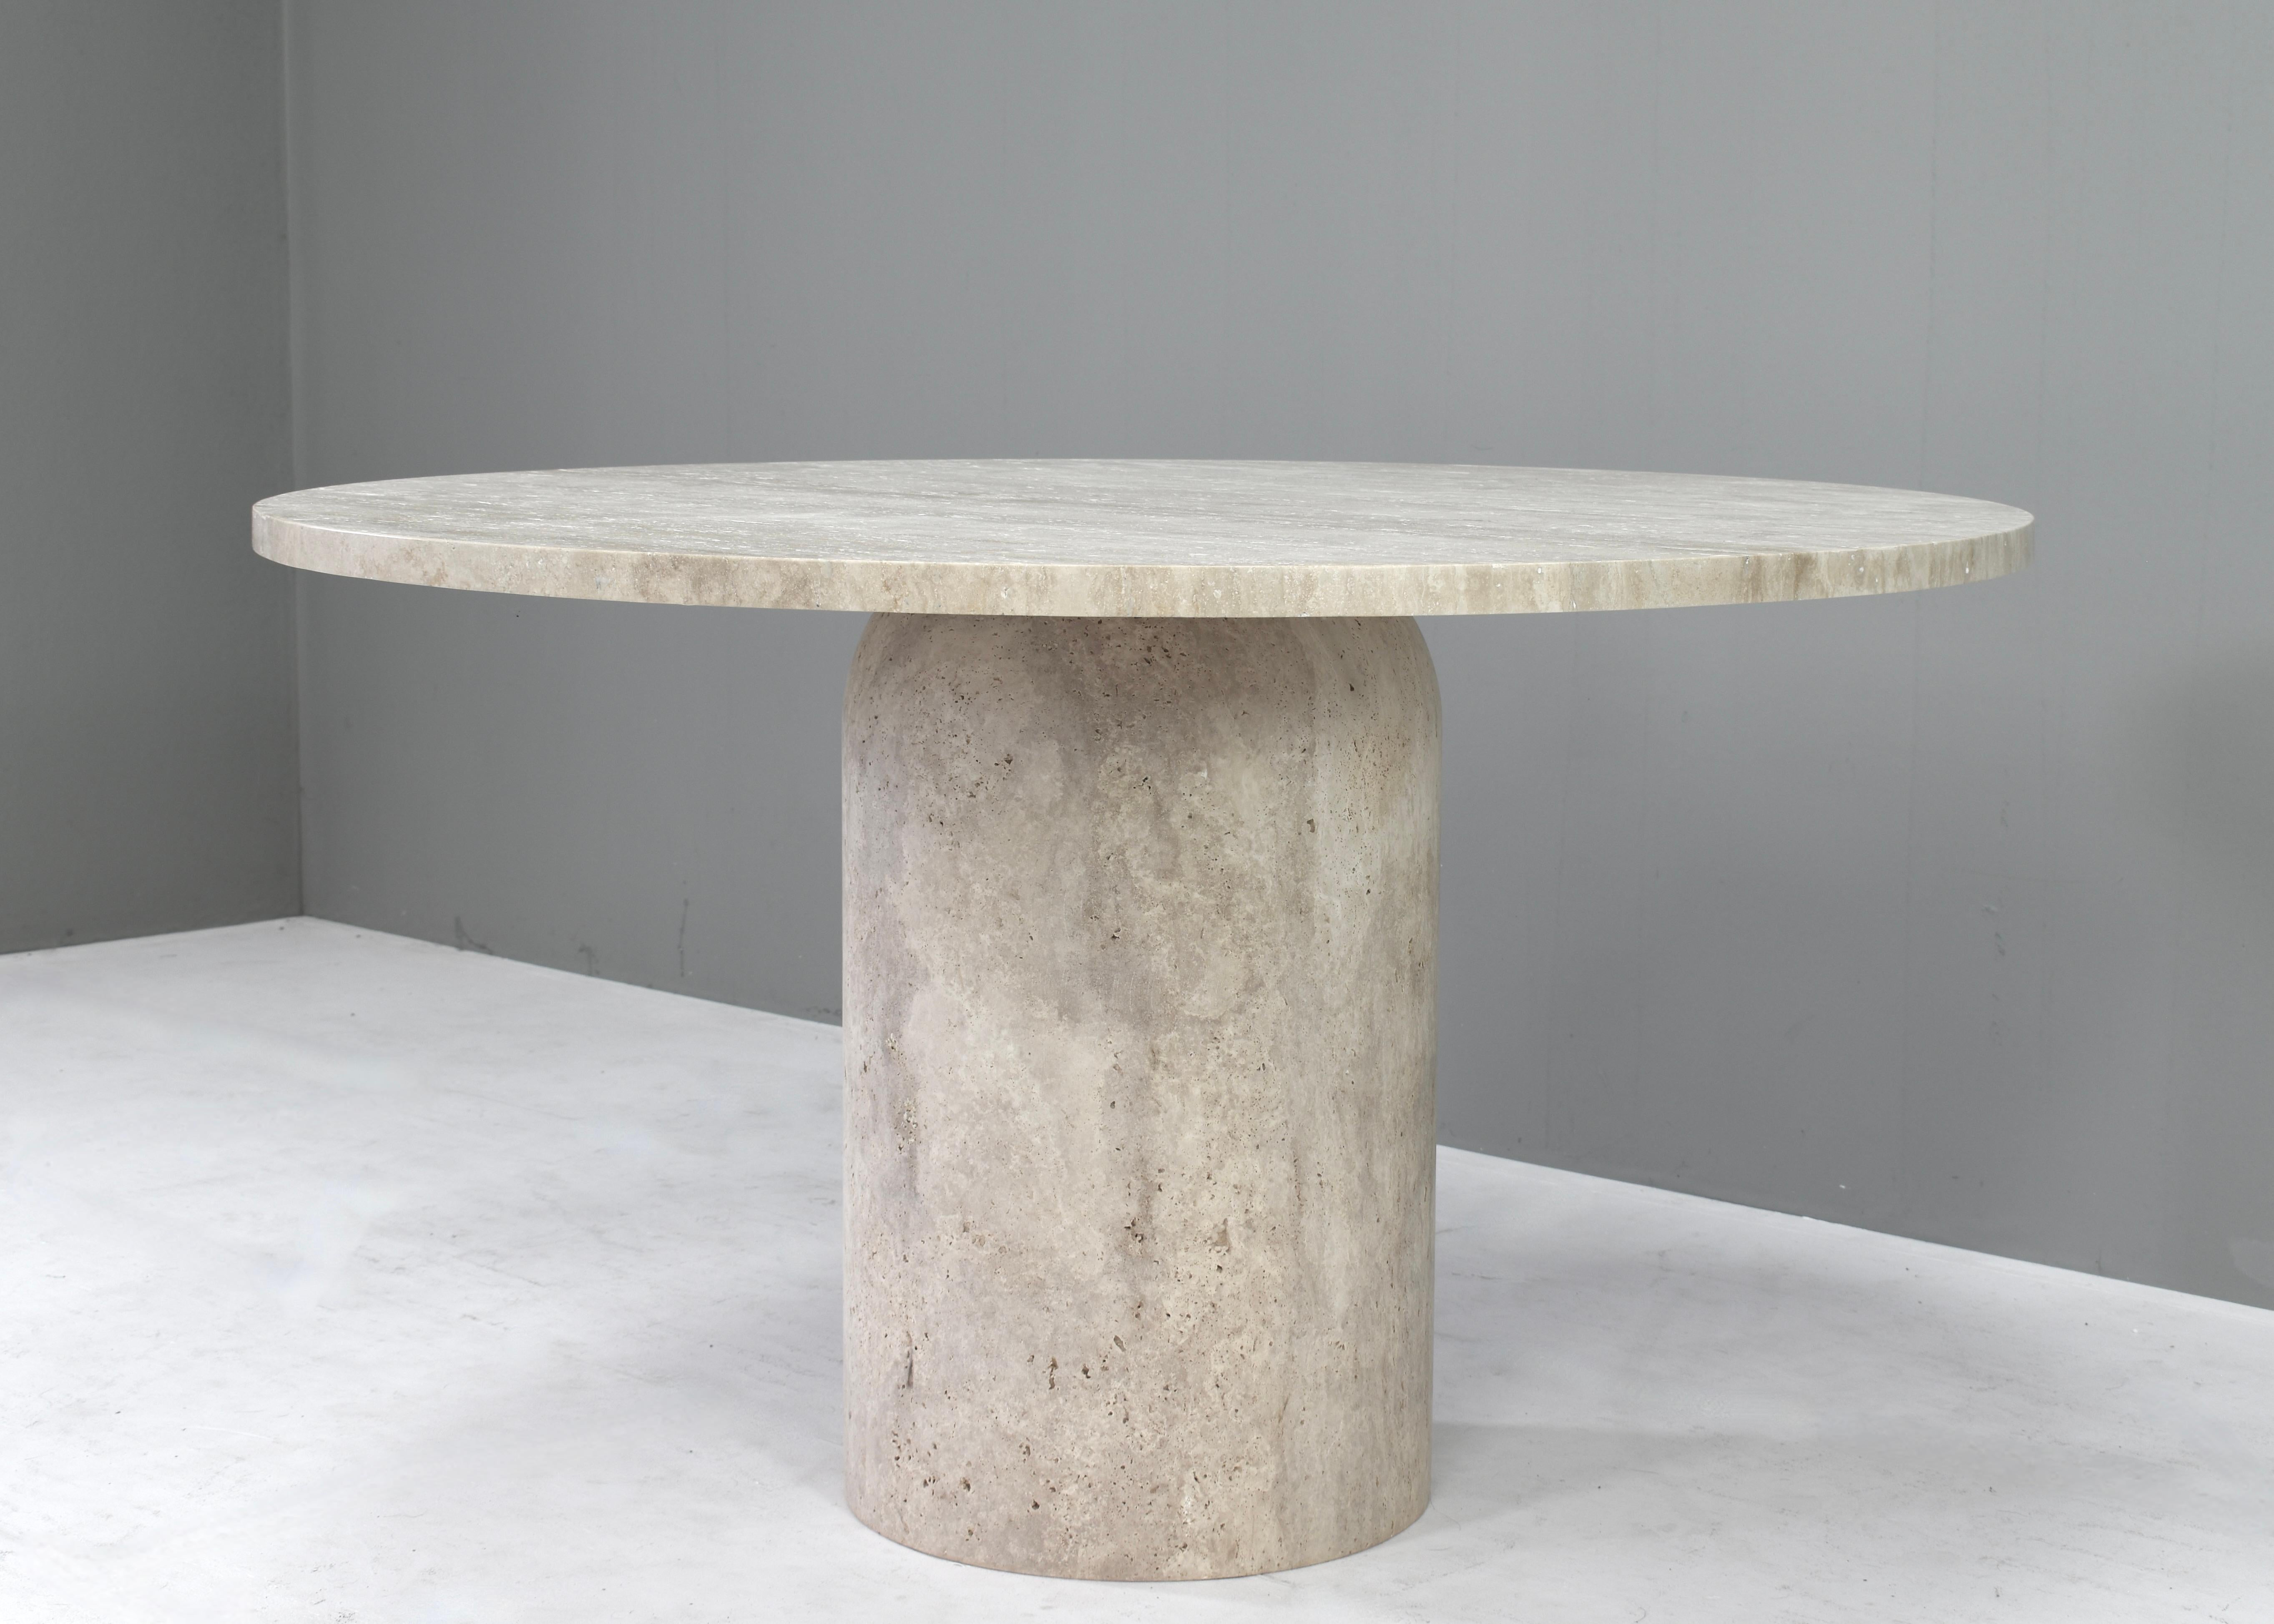 Voici cette exquise table à manger ronde en travertin - Elegance dans le manoir de Up&Up, Angelo Mangiarotti et Kelly Wearstler.
La table est fabriquée sur commande, il se peut donc que la table commandée diffère des photos.
Design/One : à la